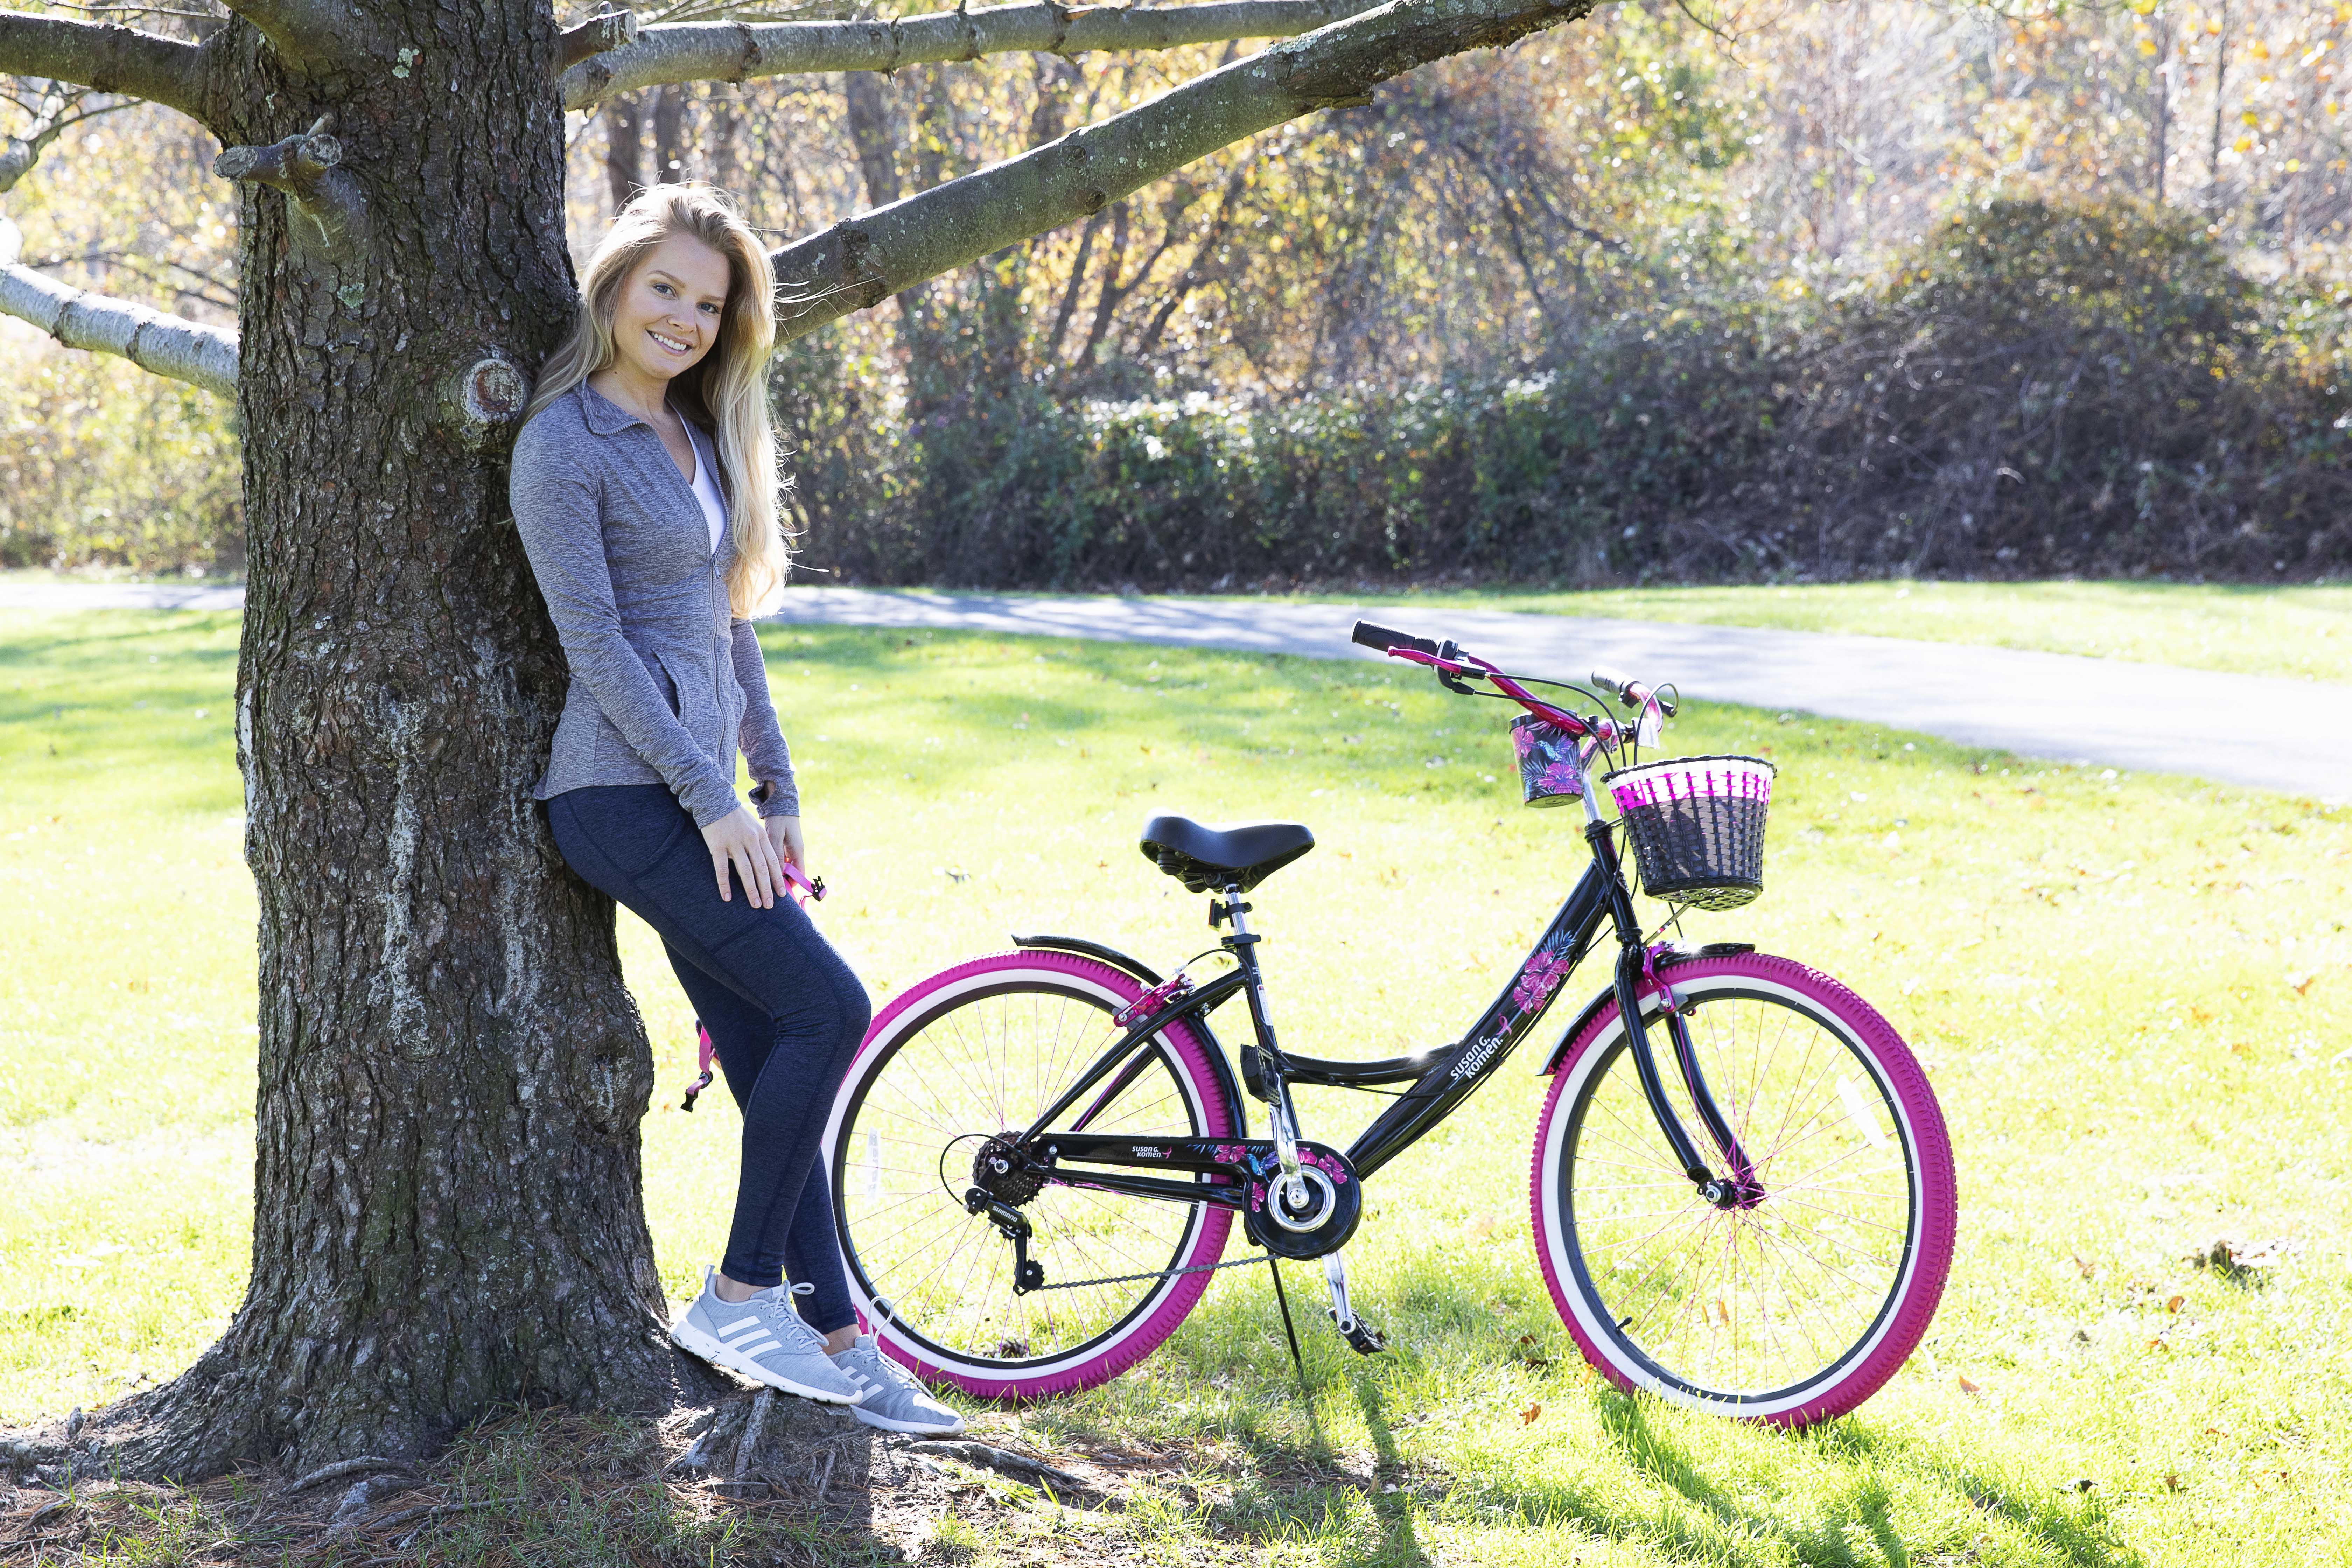 Susan G Komen 26" Women's Cruiser Bike, Black/Pink - image 8 of 10